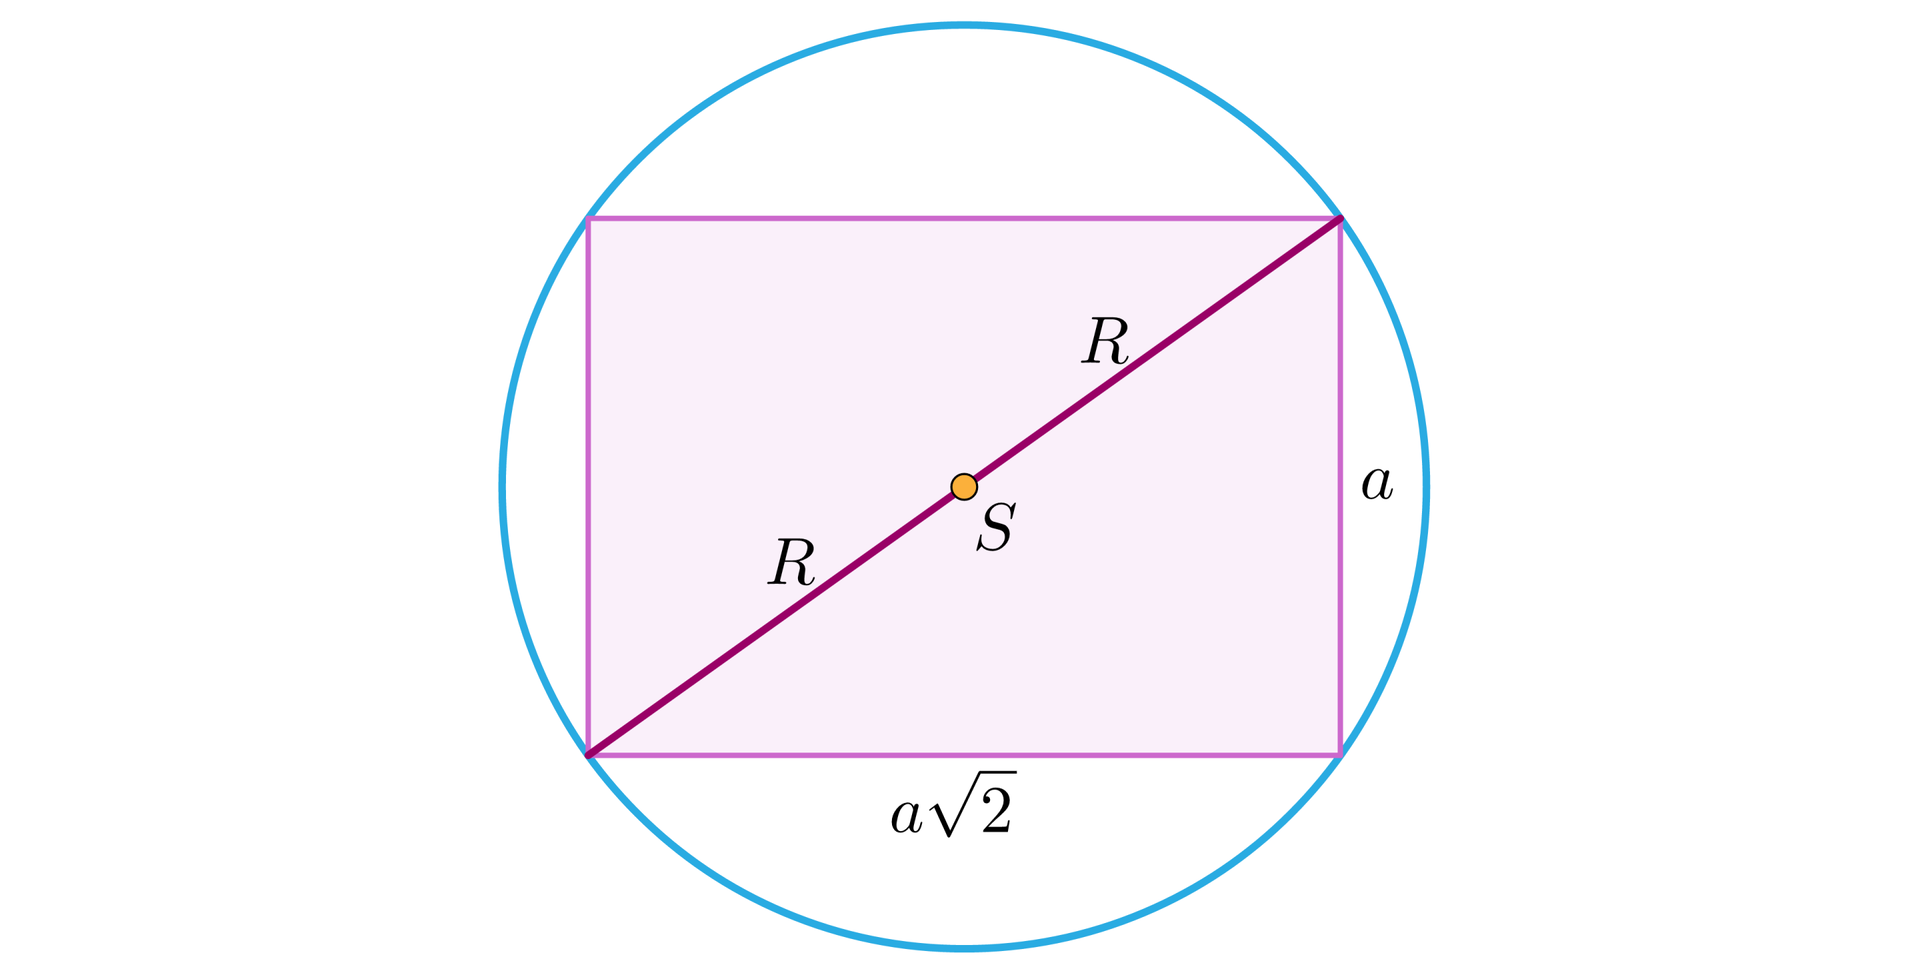 Ilustracja przedstawia okrąg opisany na prostokącie o krótszym boku długości a oraz dłuższym boku długości a pierwiastków z dwóch. Zaznaczono przekątną tego prostokąta, której środek stanowi punkt S. Połowa długości przekątnej równa się promieniowi okręgu opisanego na tym czworokącie.  